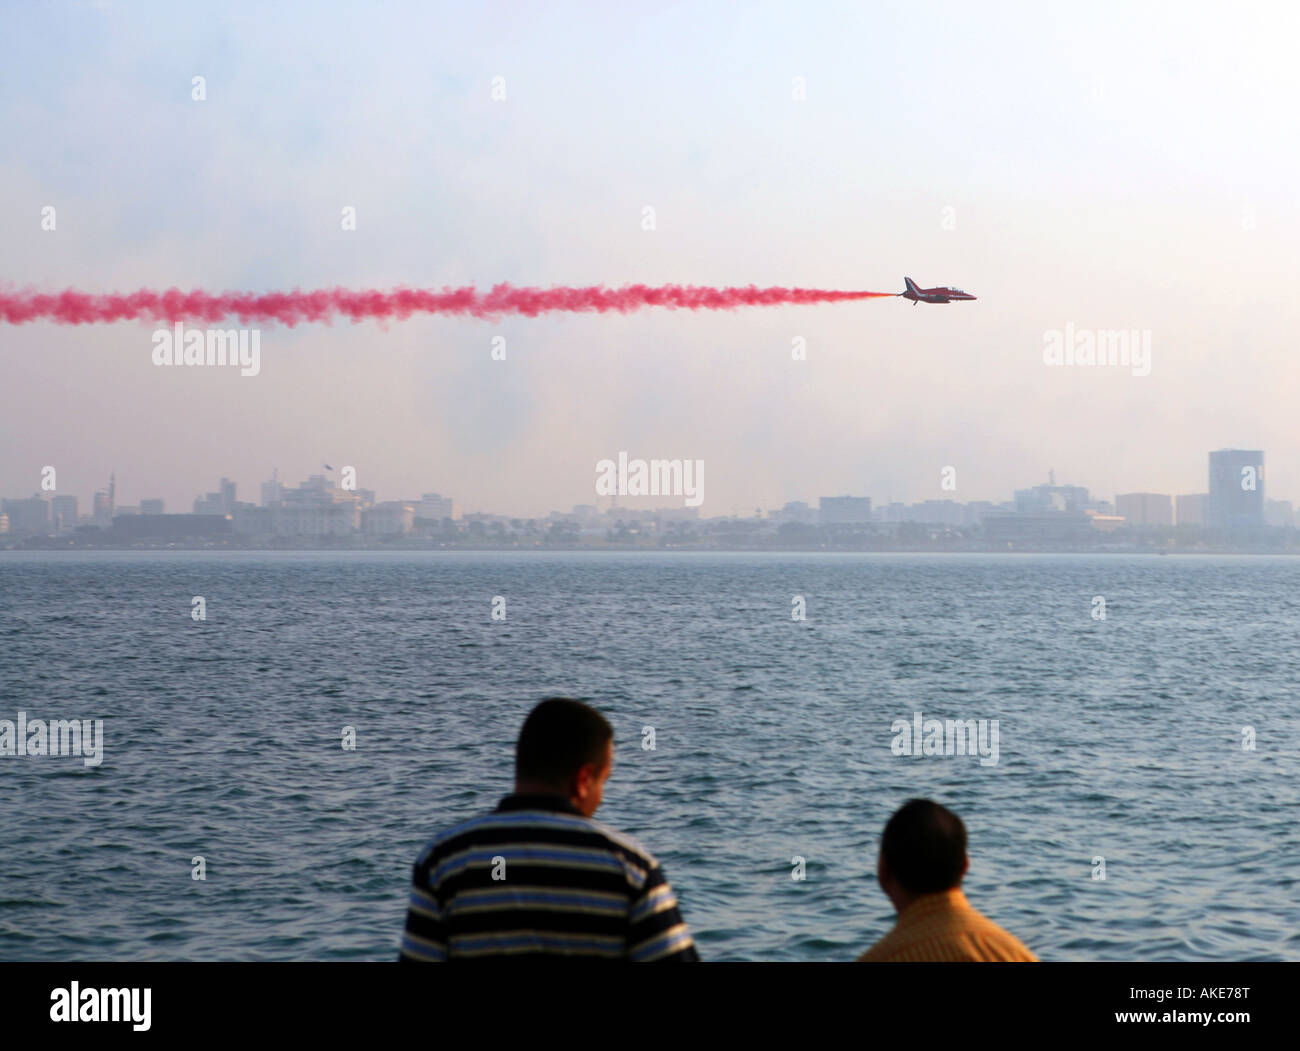 Lavoratori espatriati guardare come un membro delle frecce rosse RAF display team vola nella parte anteriore del Qatar s Emiri Diwan (dominatore's palace) Foto Stock